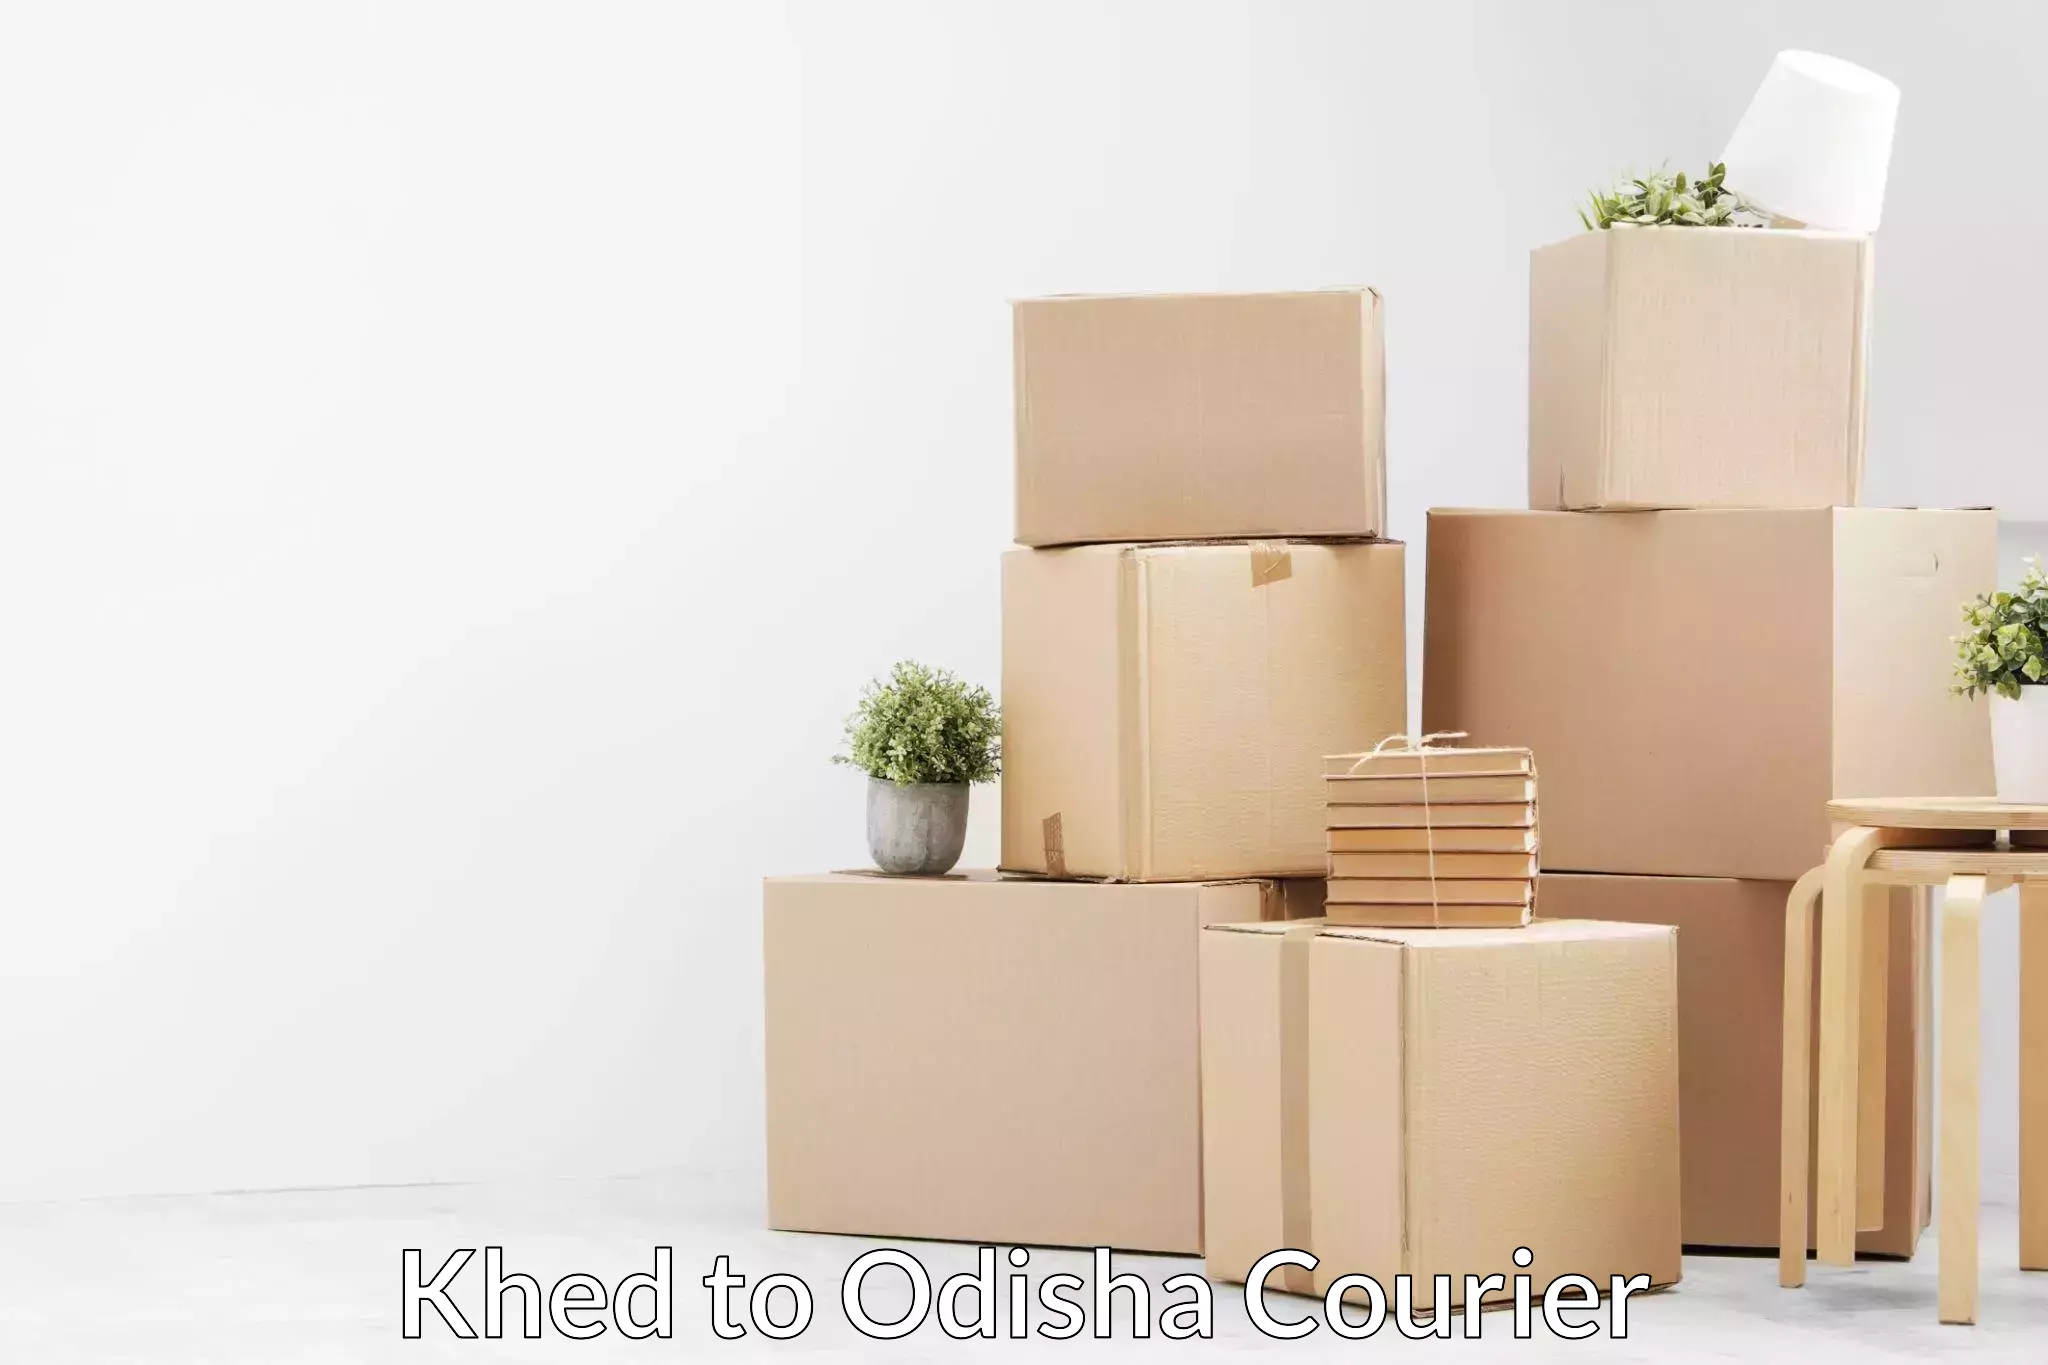 Expert furniture transport Khed to Ukhunda